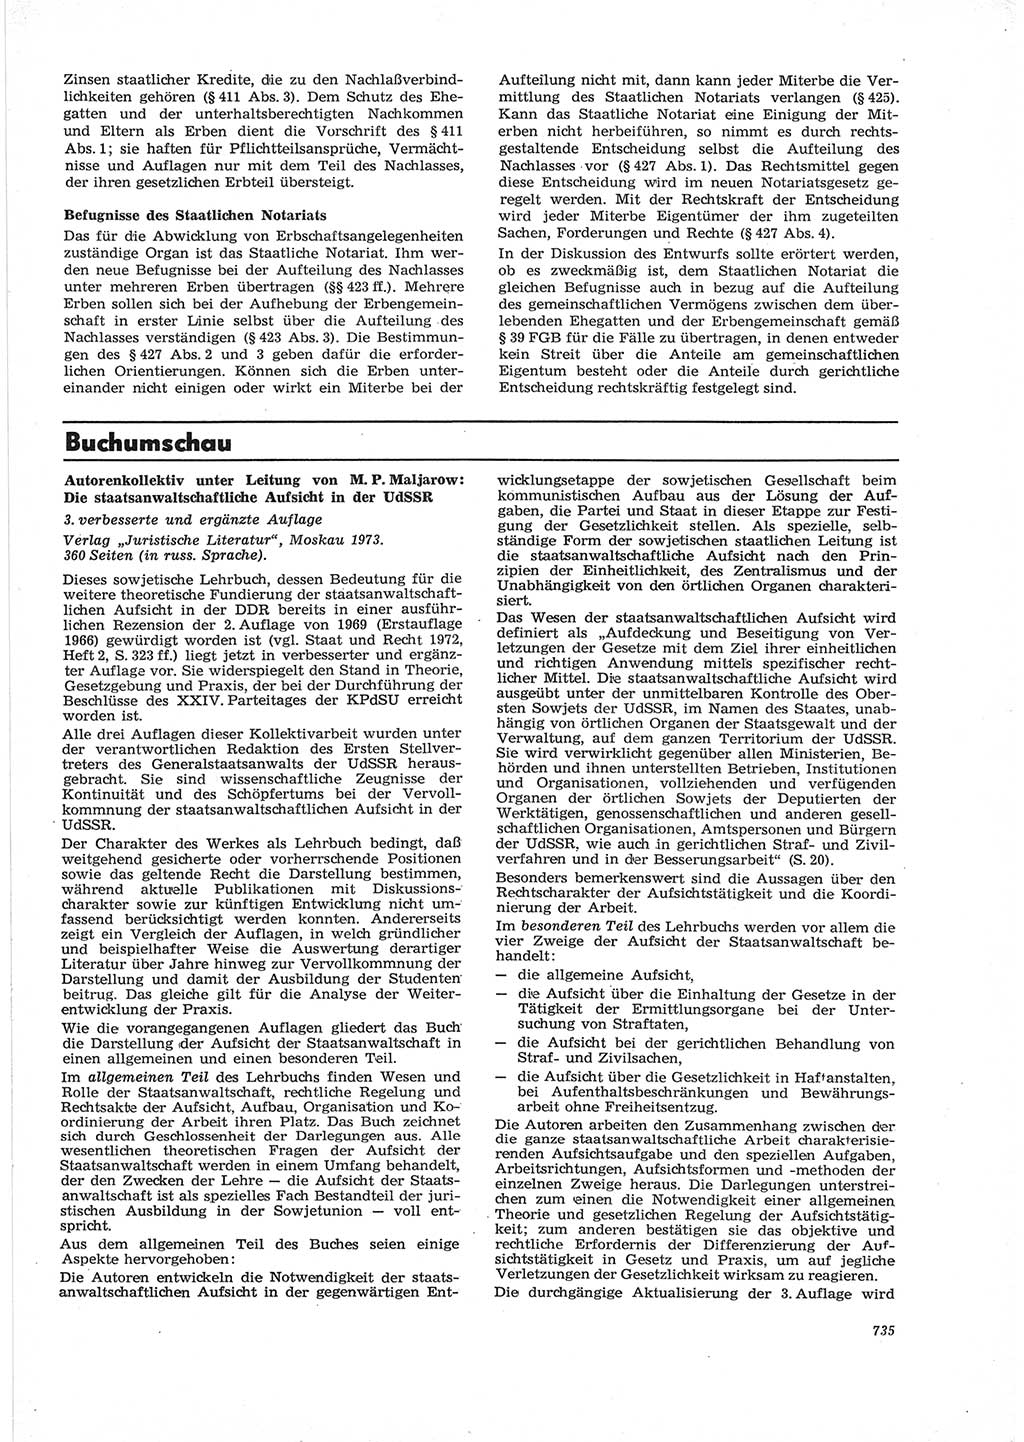 Neue Justiz (NJ), Zeitschrift für Recht und Rechtswissenschaft [Deutsche Demokratische Republik (DDR)], 28. Jahrgang 1974, Seite 735 (NJ DDR 1974, S. 735)